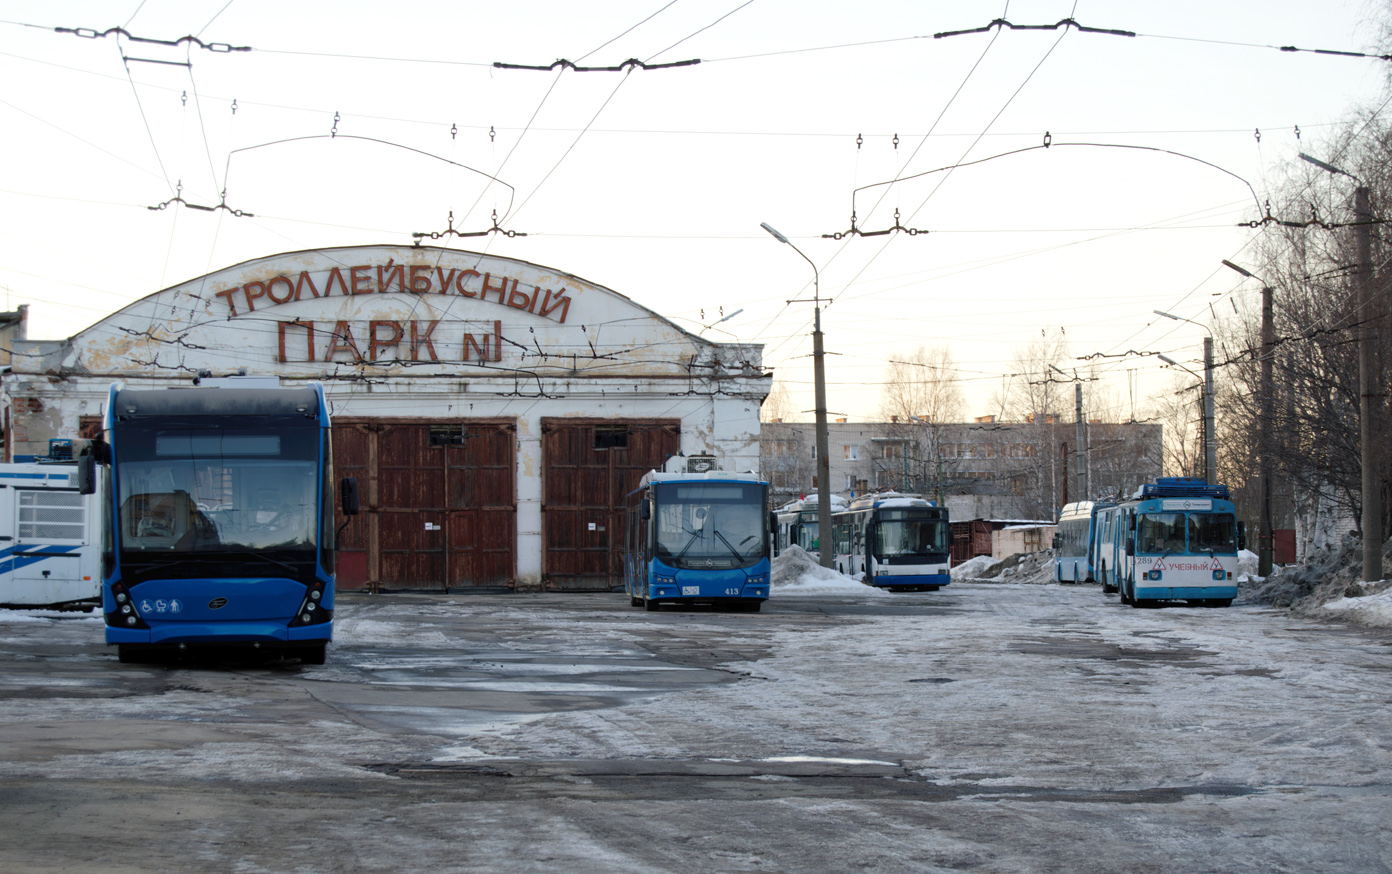 Петрозаводск — Новые троллейбусы; Петрозаводск — Разные фотографии